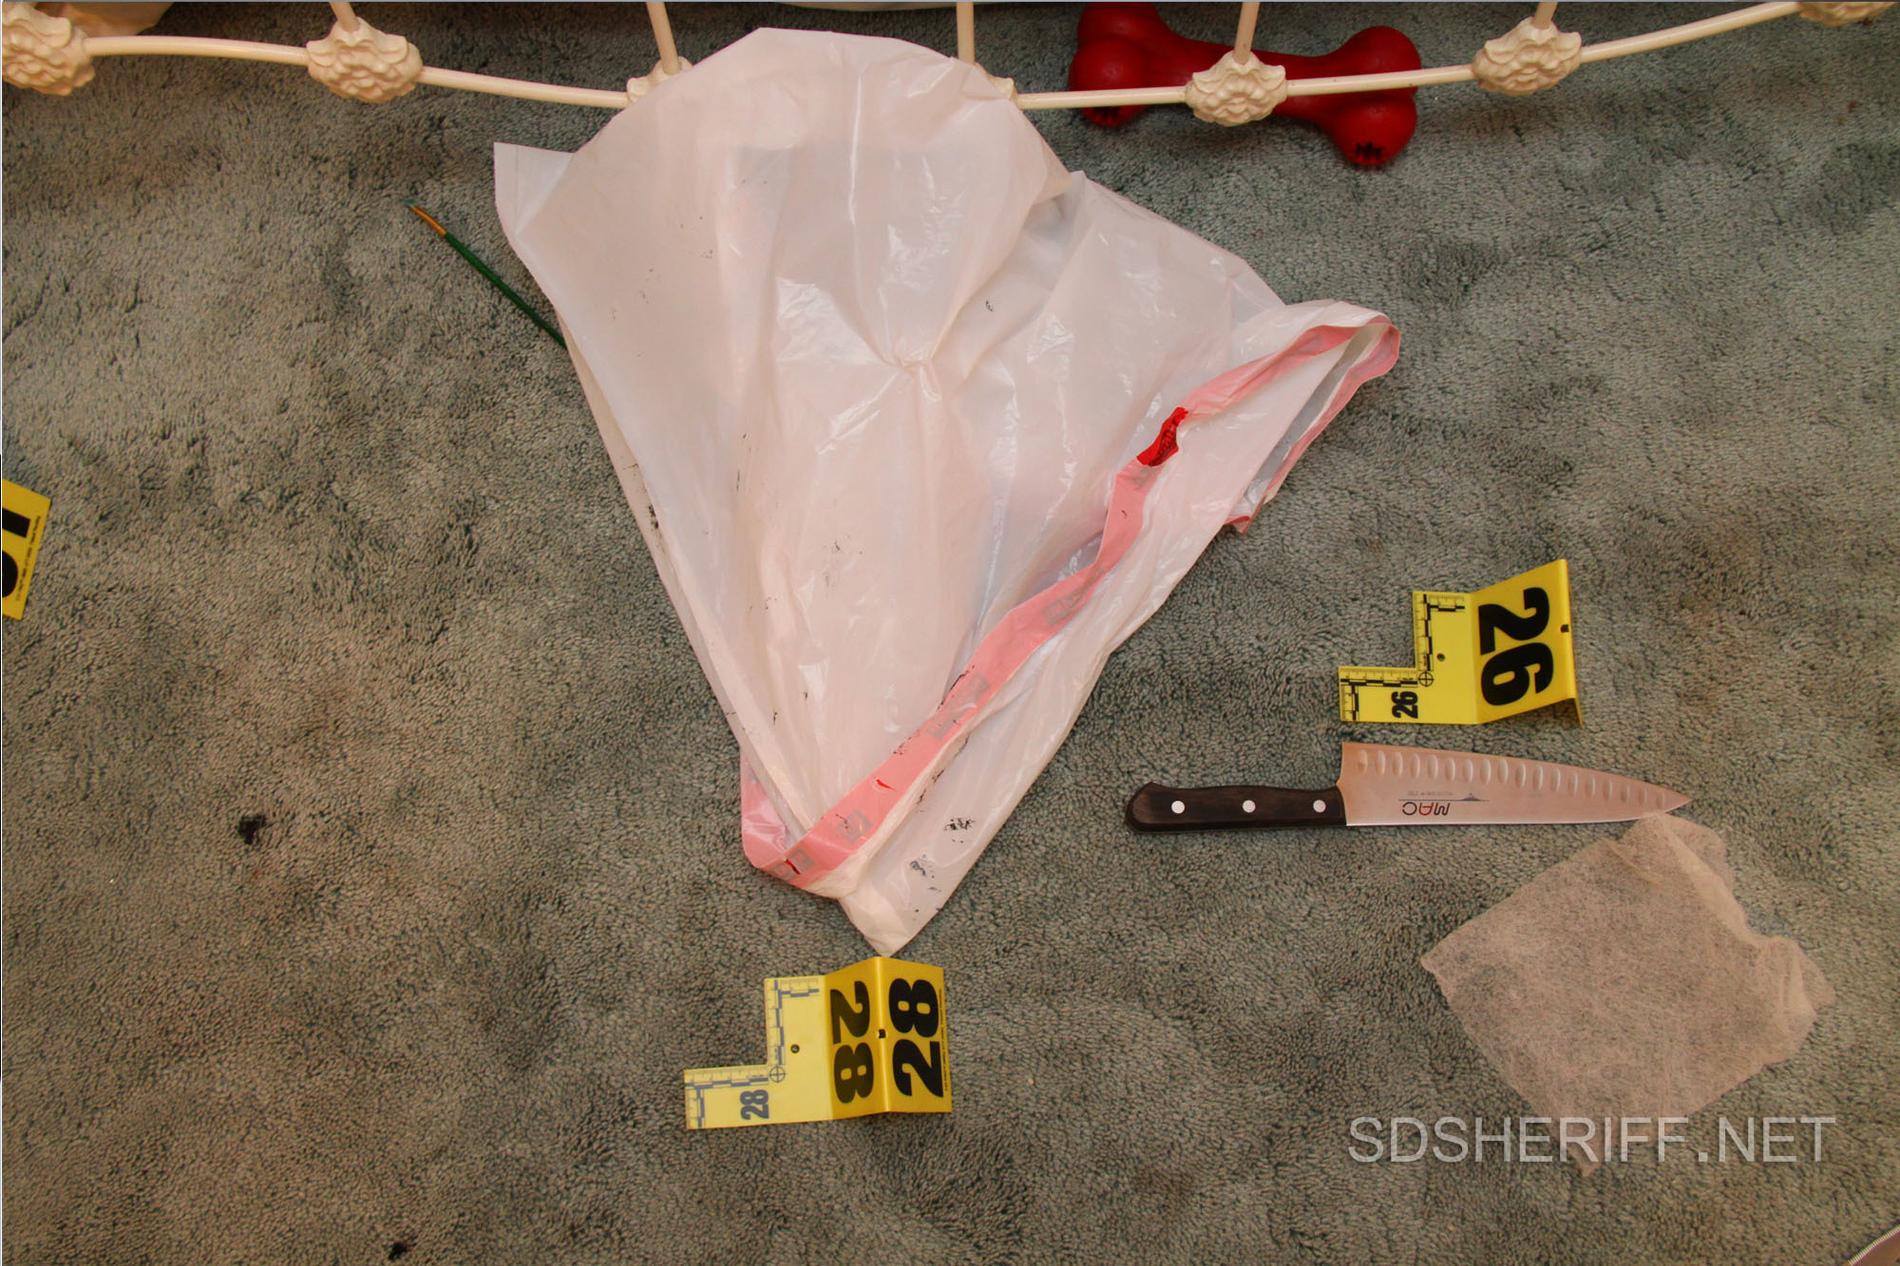 Polisen hittade en kniv i sovrummet som man 2011 misstänkte att Rebecca Zahau, 32, tagit sitt eget liv med. 